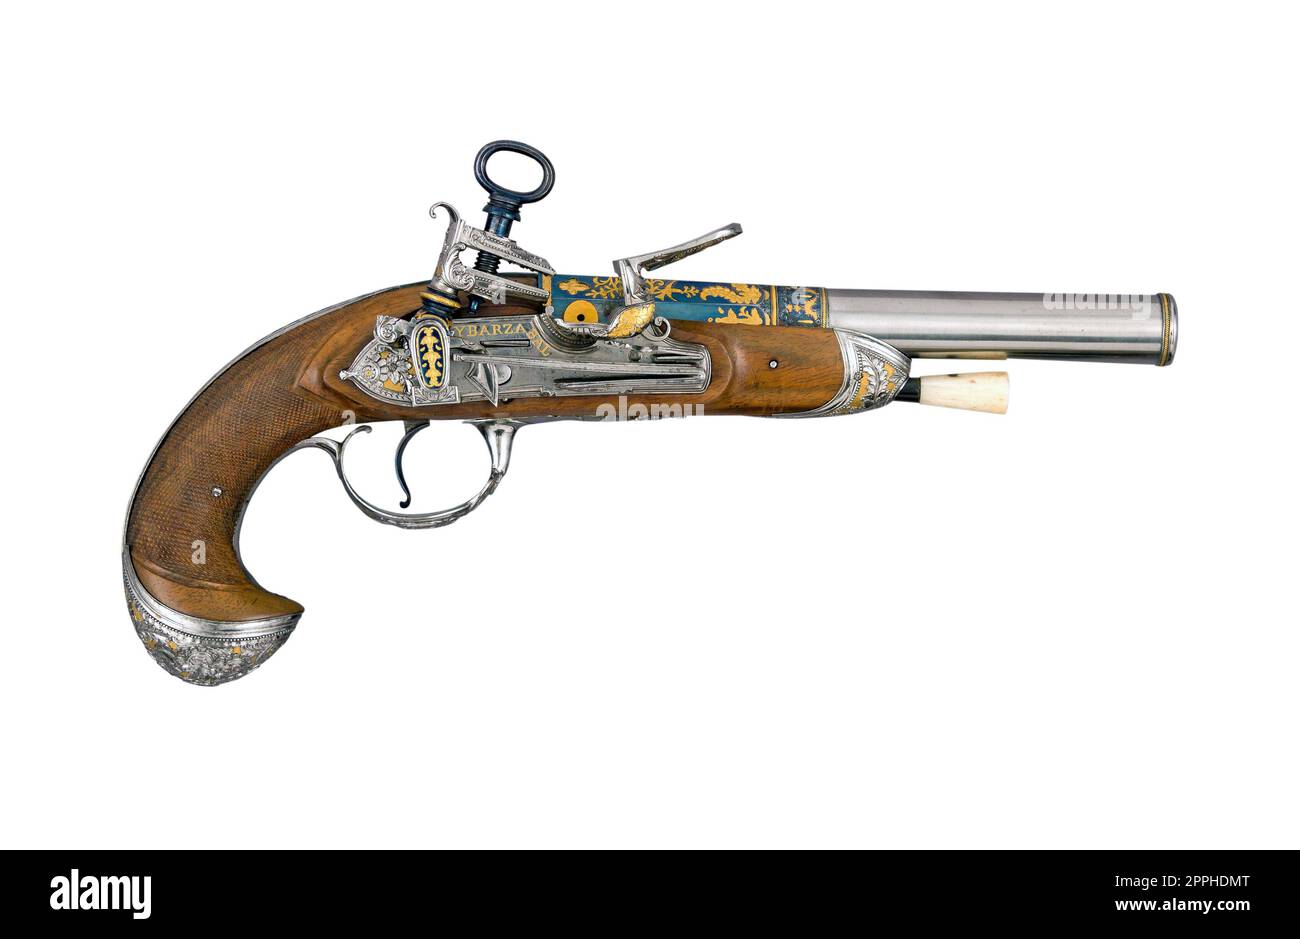 Antica pistola spagnola del XVIII secolo con serratura a pietra focaia isolata Foto Stock